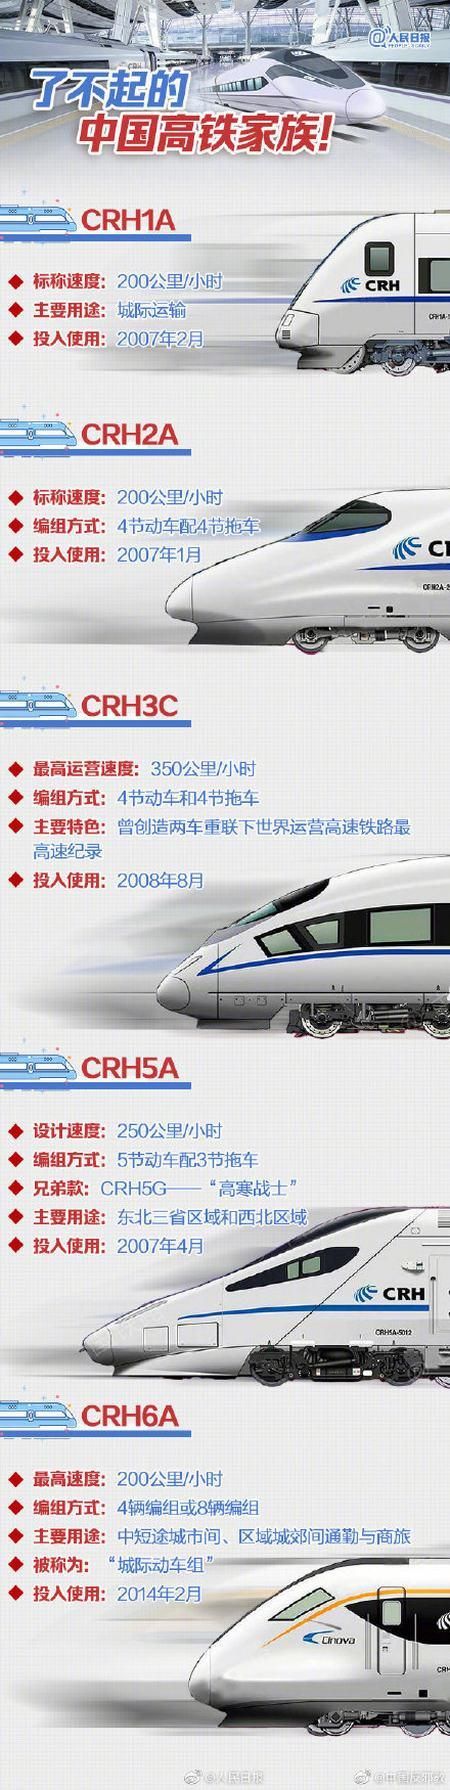 中国高铁第一股挂牌上市